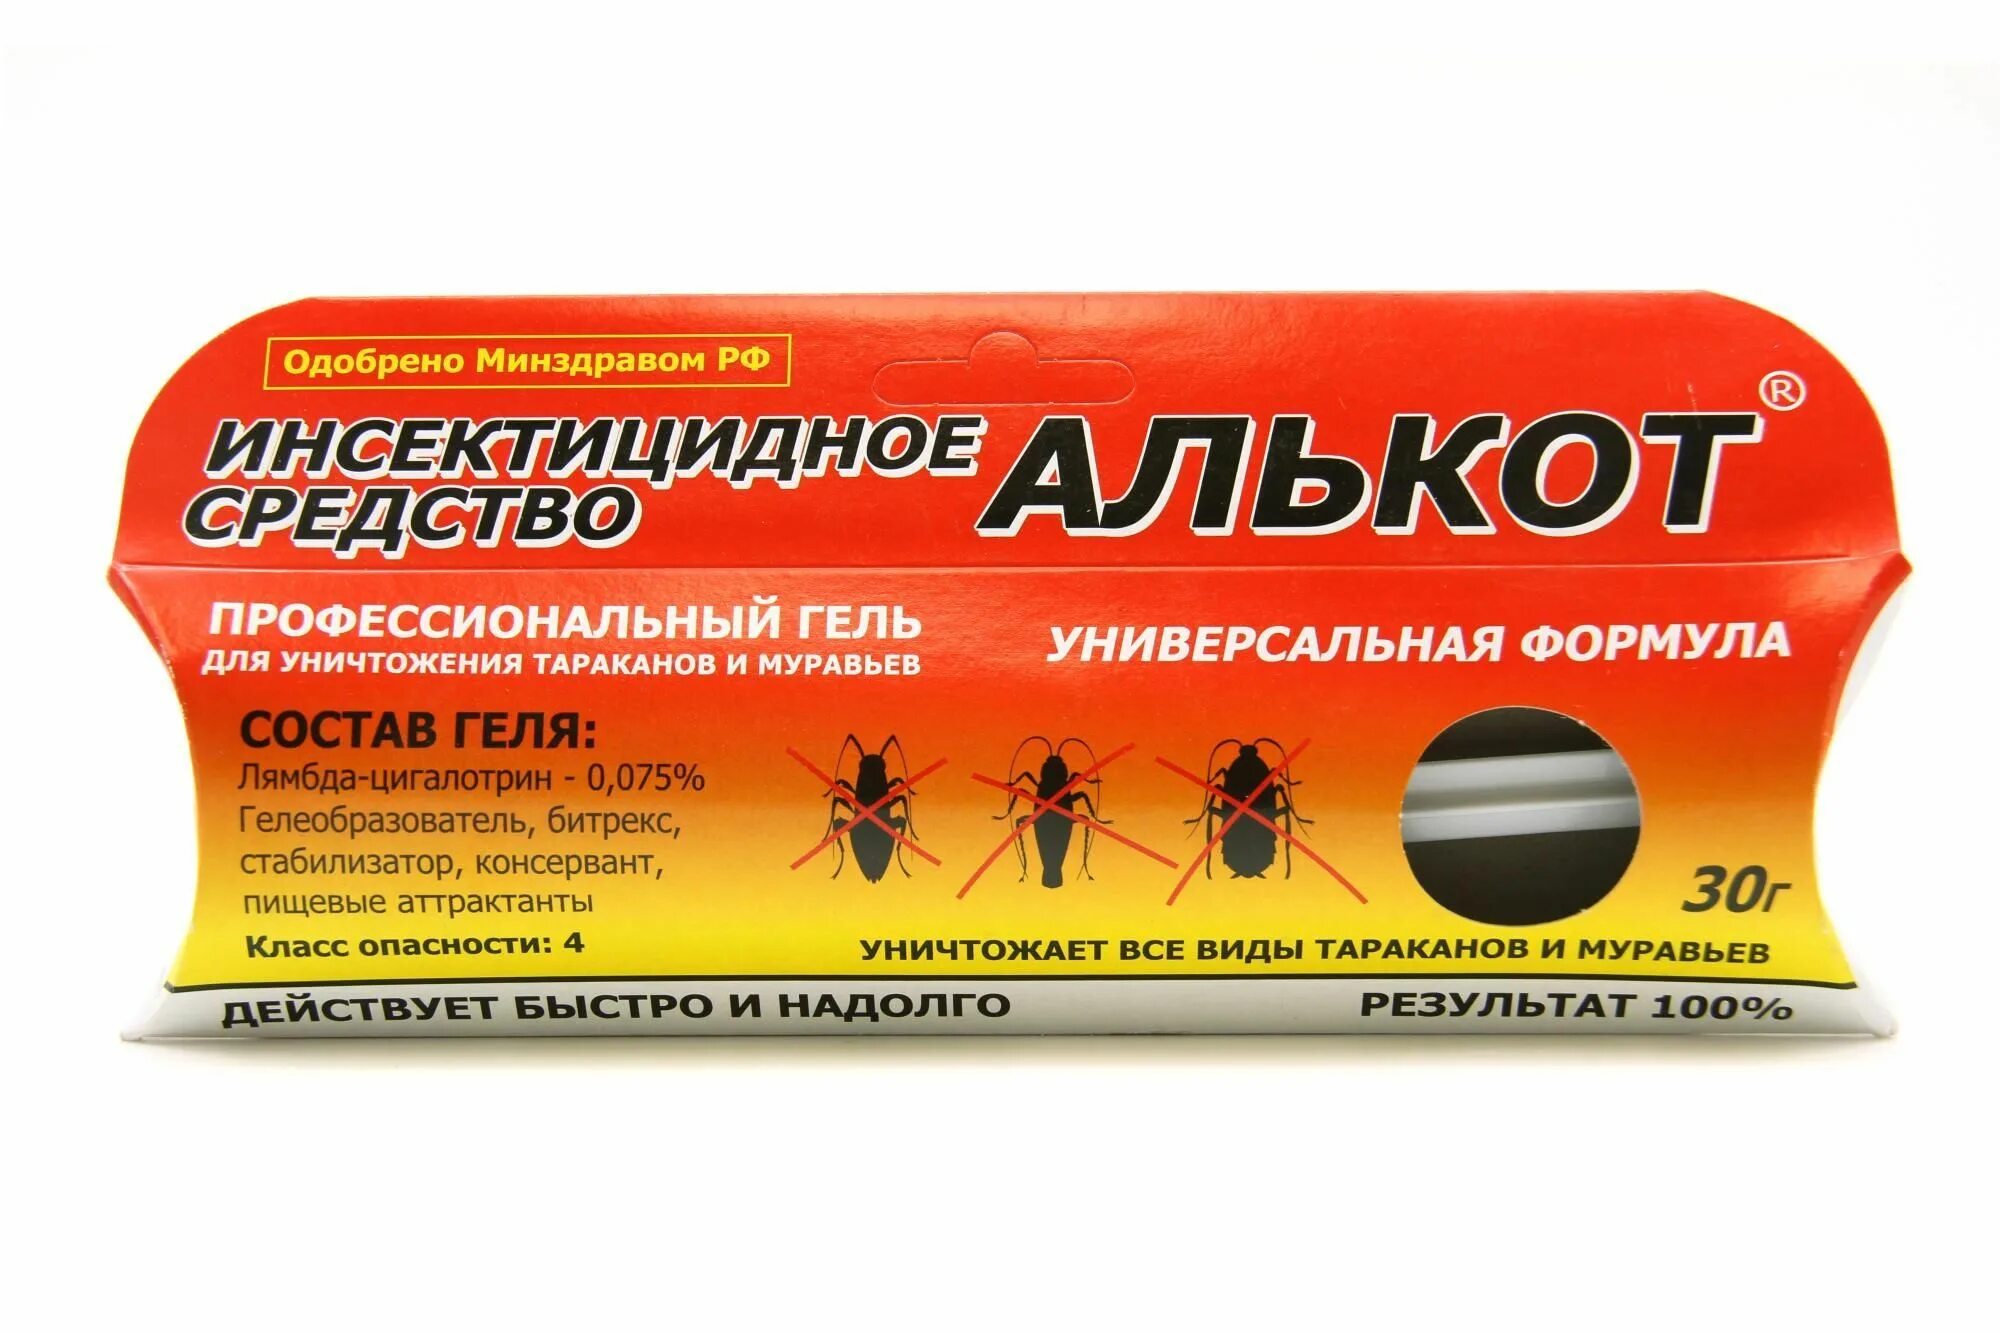 Алькот гель, 30гр. Инсектицидный гель Cockroach Insecticide, 30 гр. Алькот от тараканов. Стретствоот тараканов.